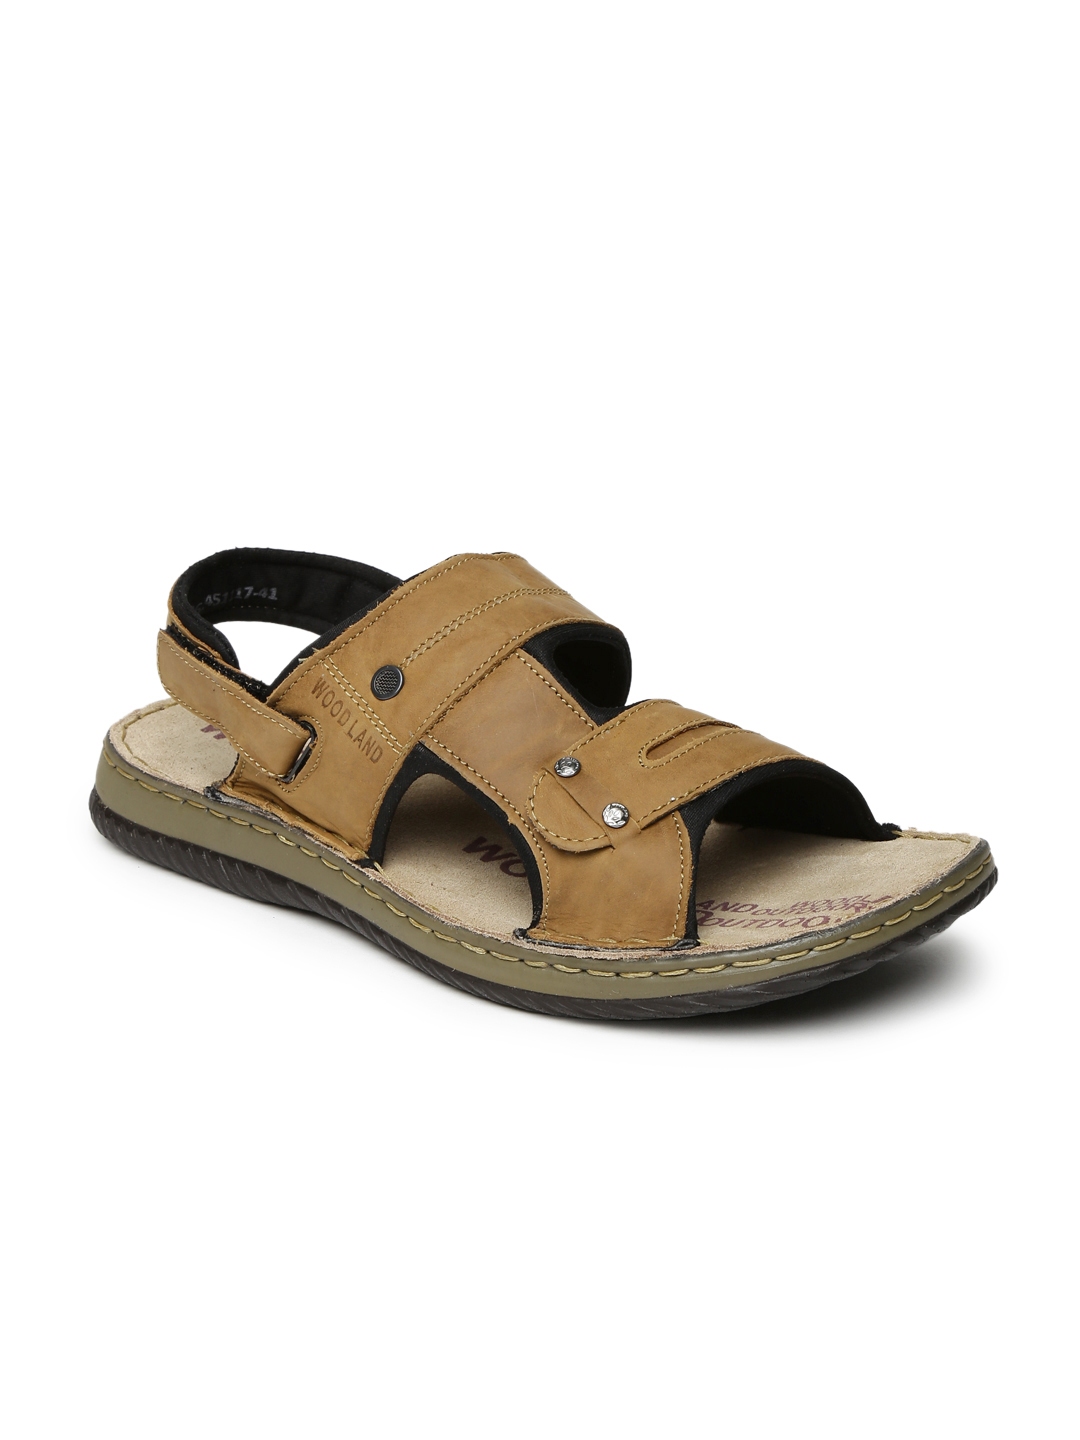 Buy Woodland Men Brown Comfort Sandals - Sandals for Men 2197564 | Myntra